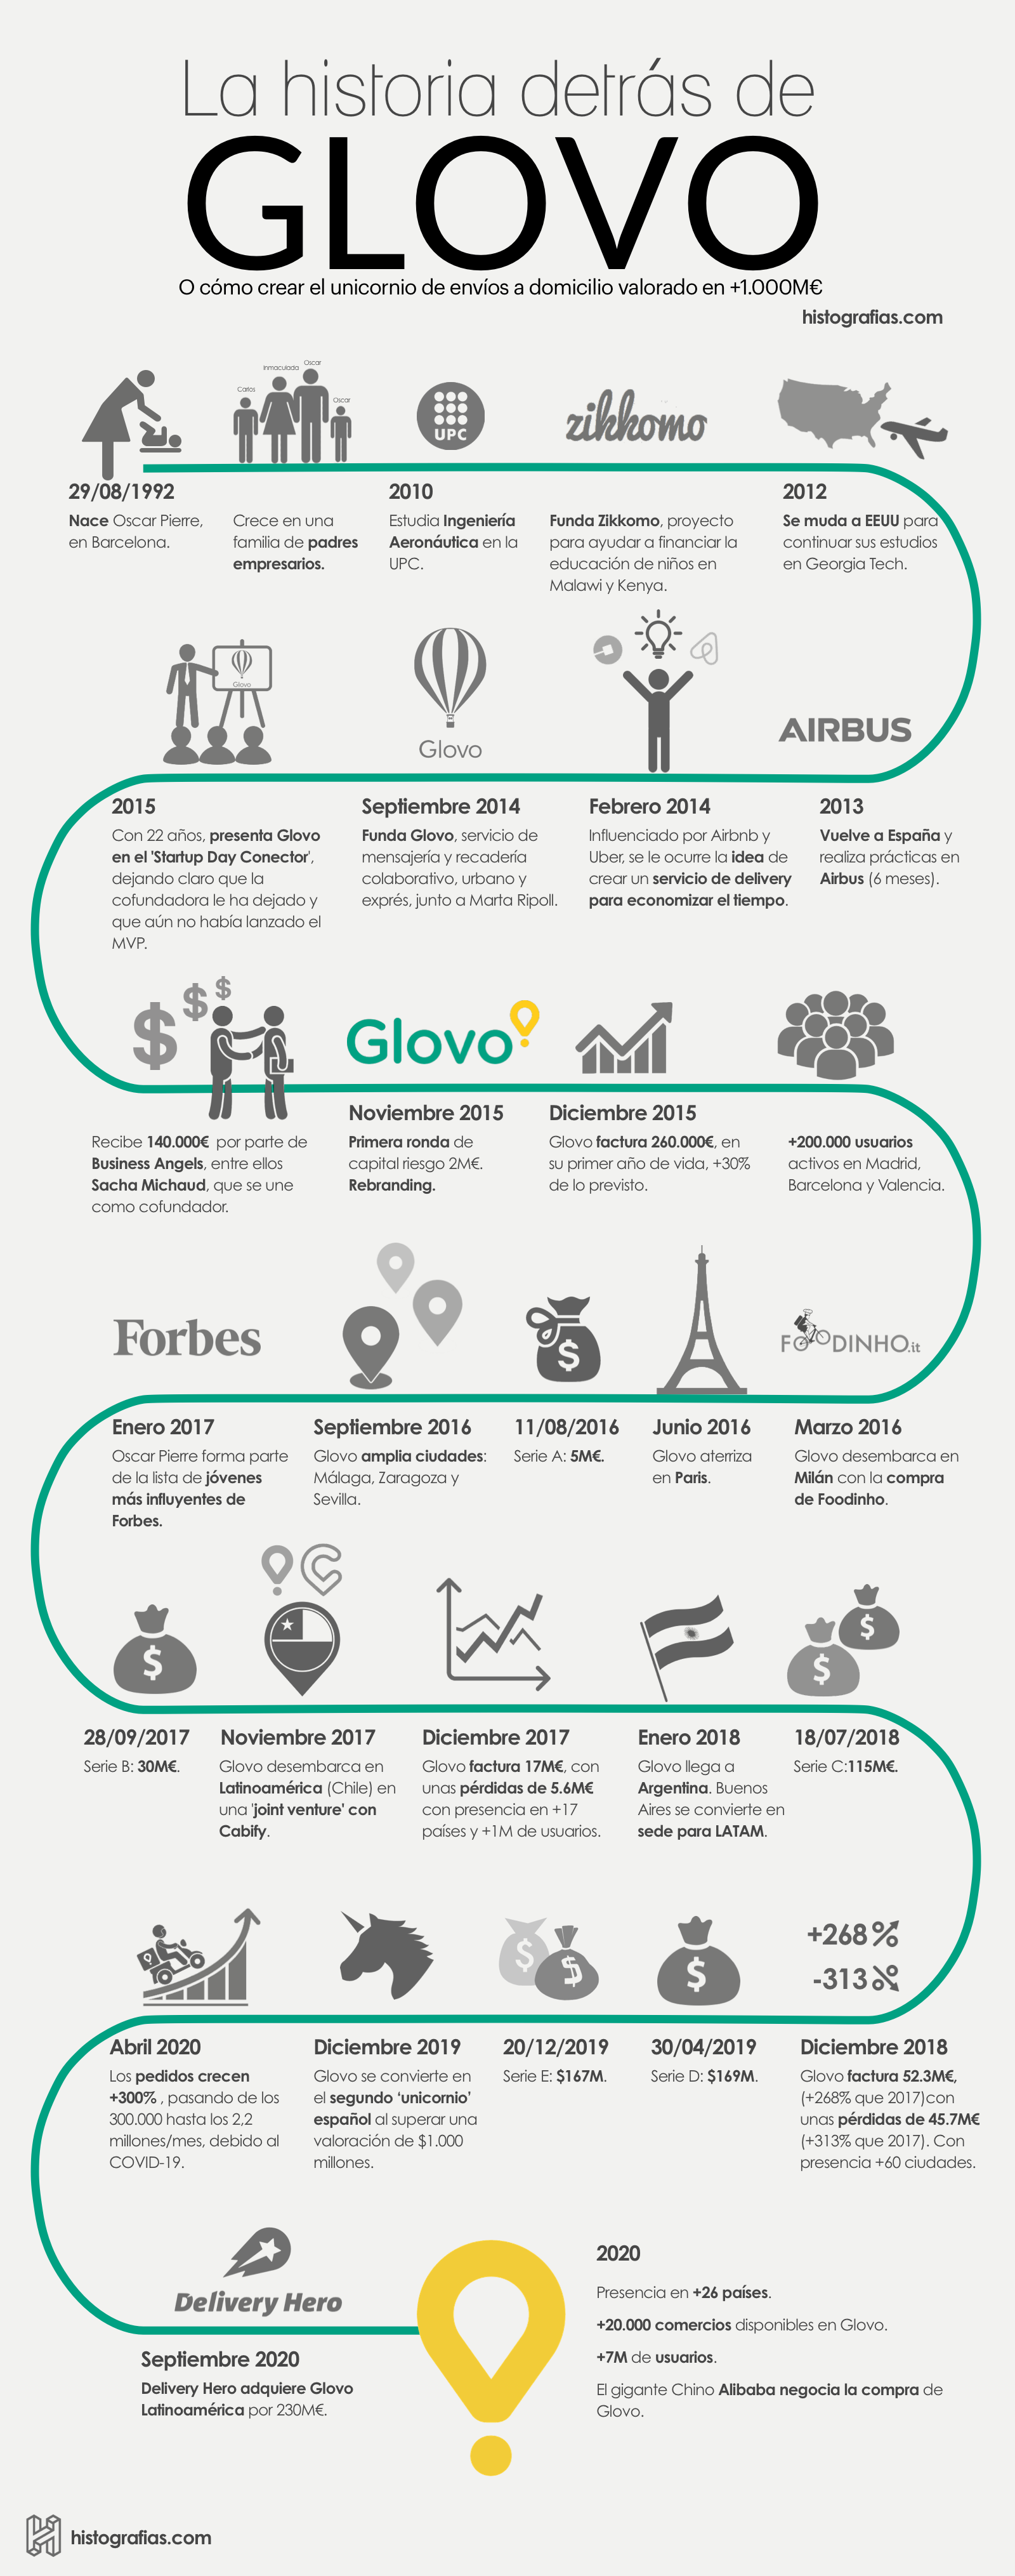 Infografía que cuenta la historia de Glovo y su fundador Oscar Pierre. Desde su nacimiento hasta el año 2020, año en el que aumentaron los pedidos más de 300% debido al COVID-19.